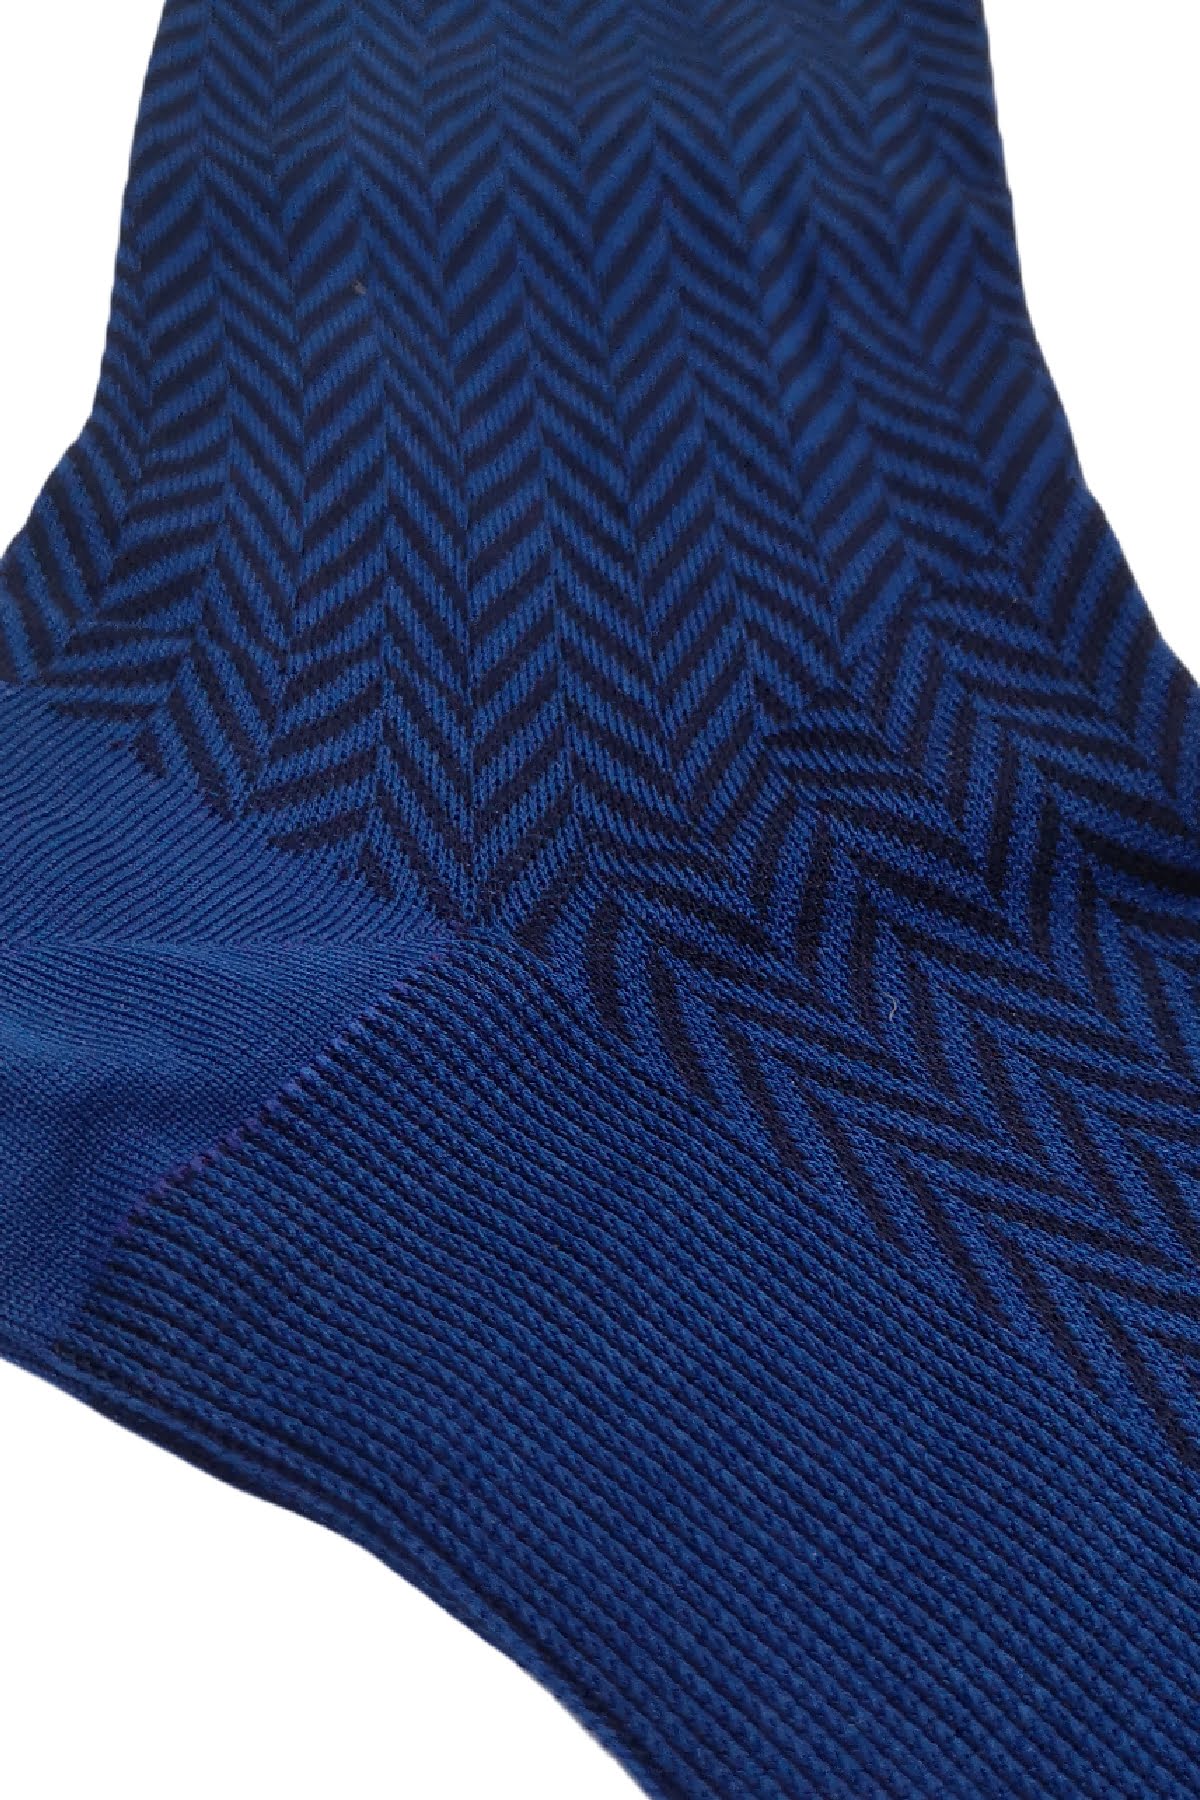 Calzini uomo fantasia geometrica zig zag blu in cotone lunghezza ginocchio made in italy